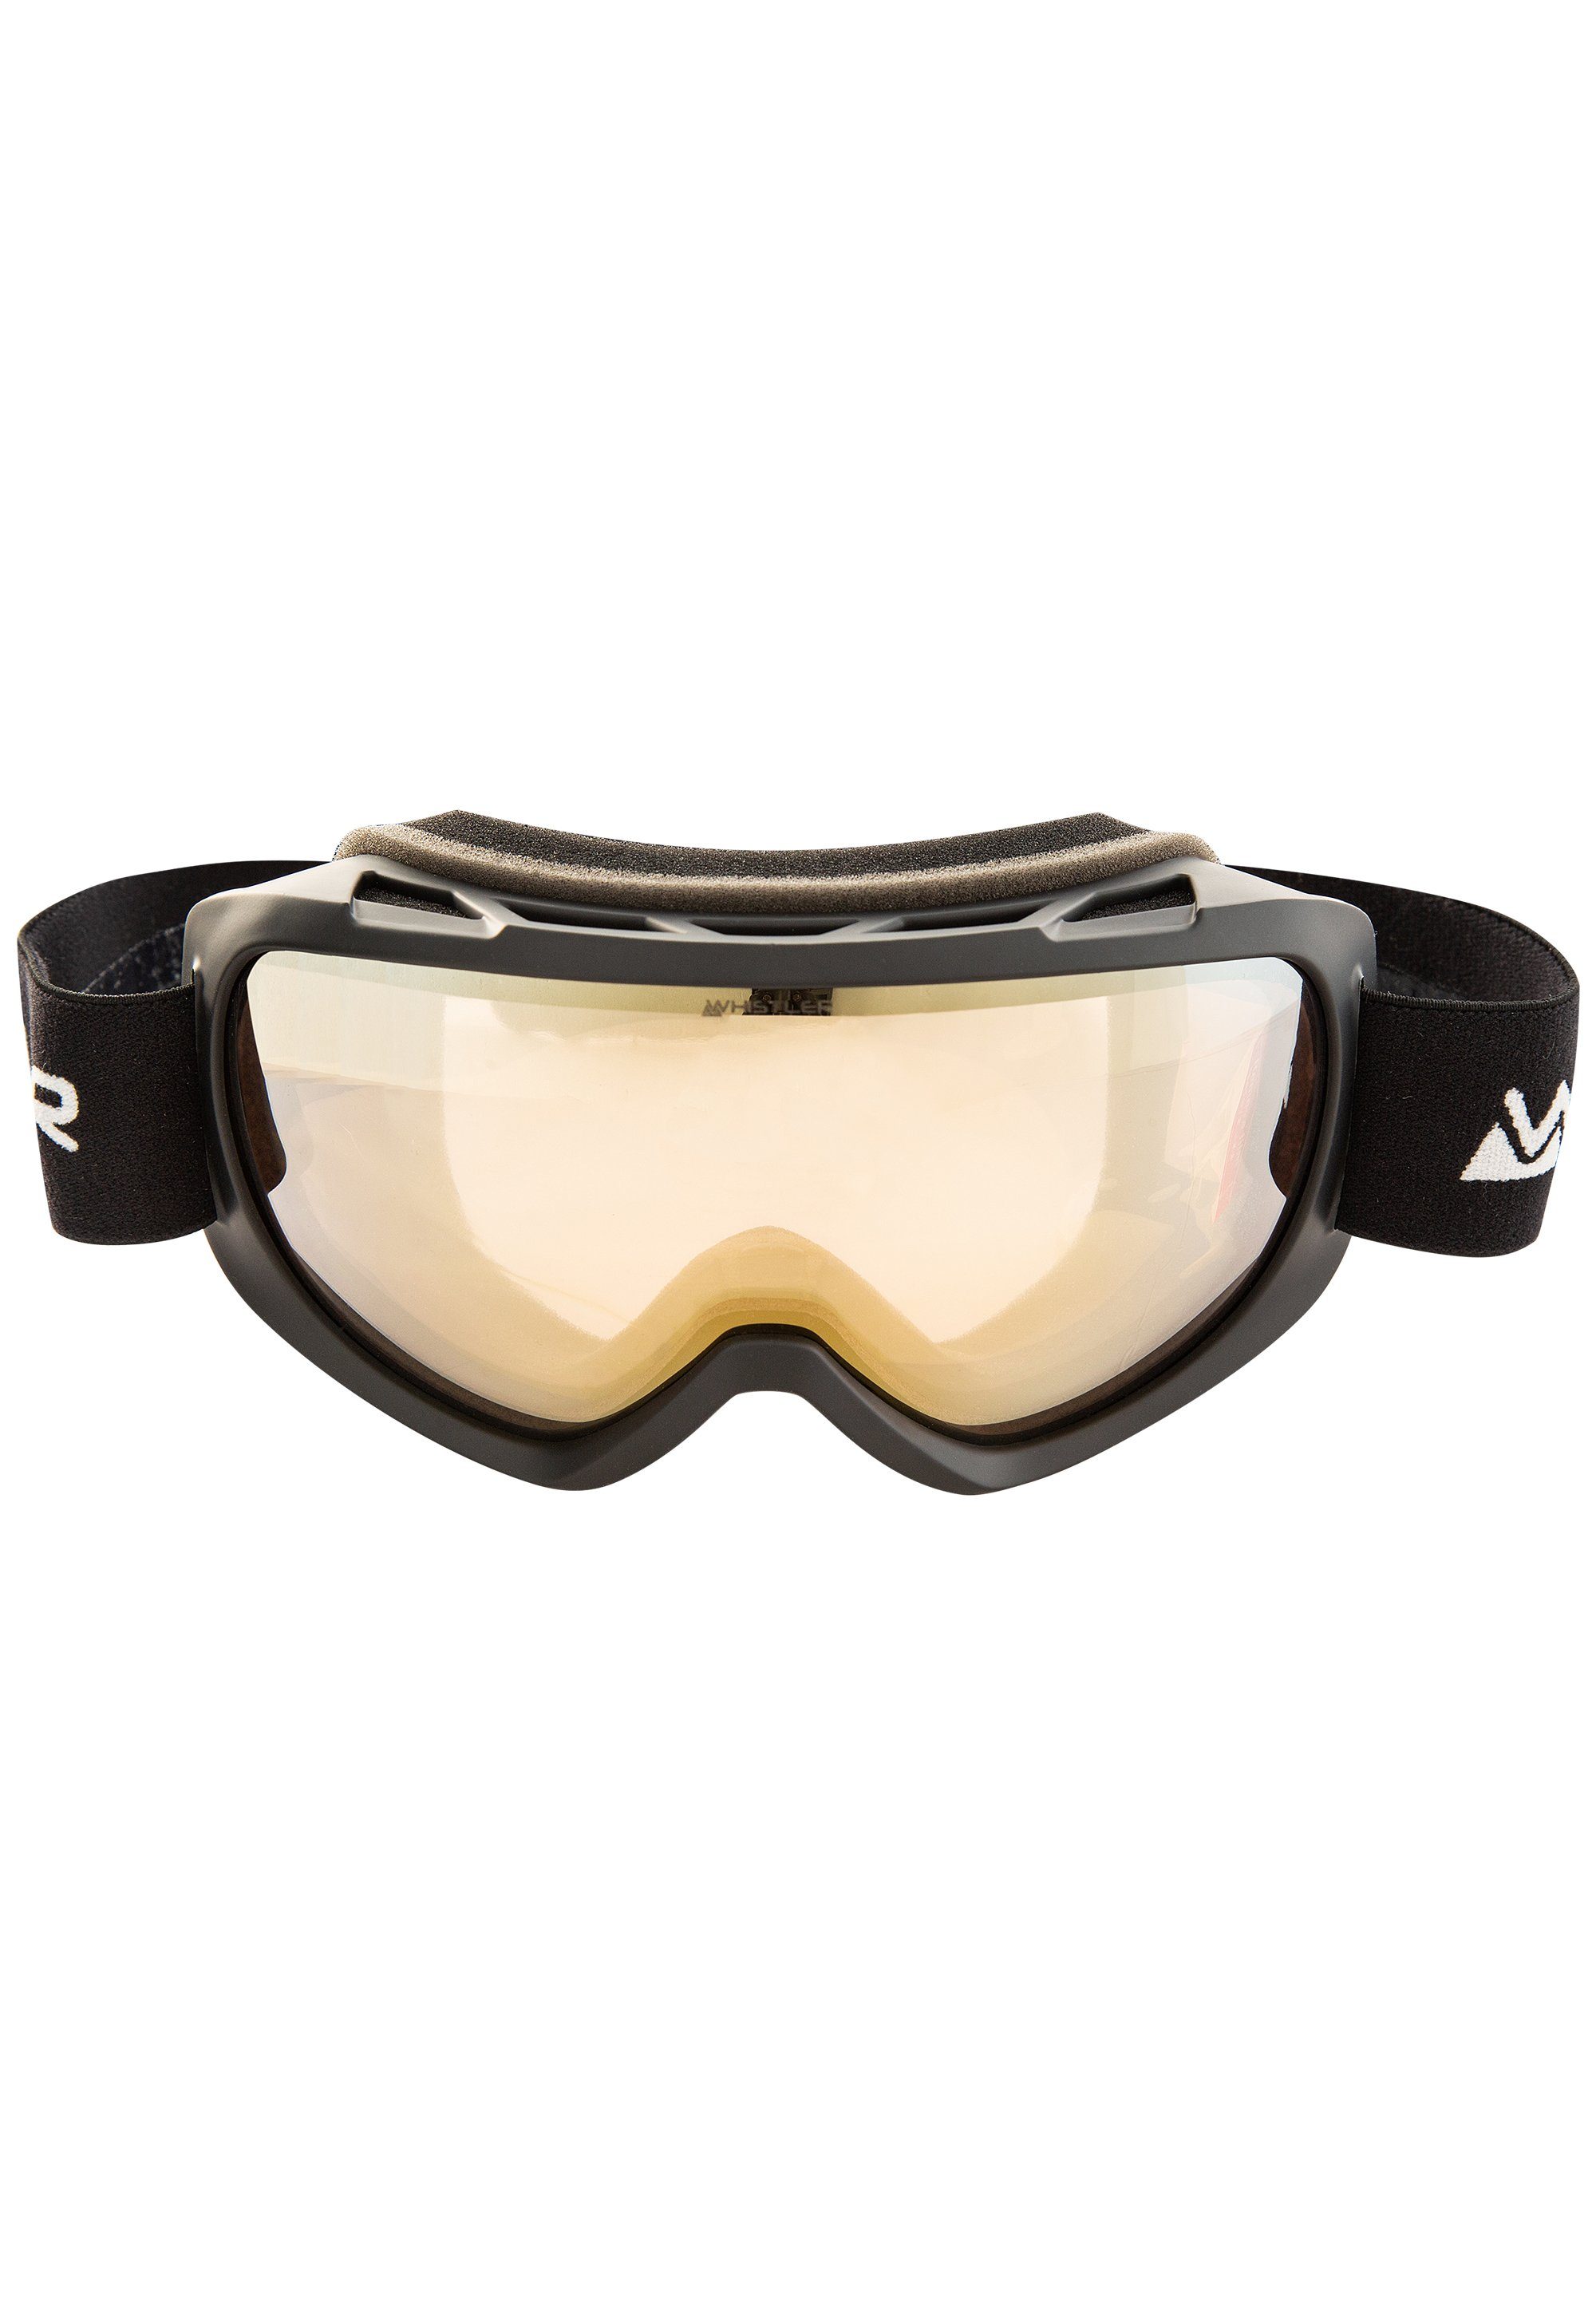 WHISTLER Skibrille WS3.72 Clear Vision Ski Goggle, mit praktischer Anti-Beschlag-Beschichtung